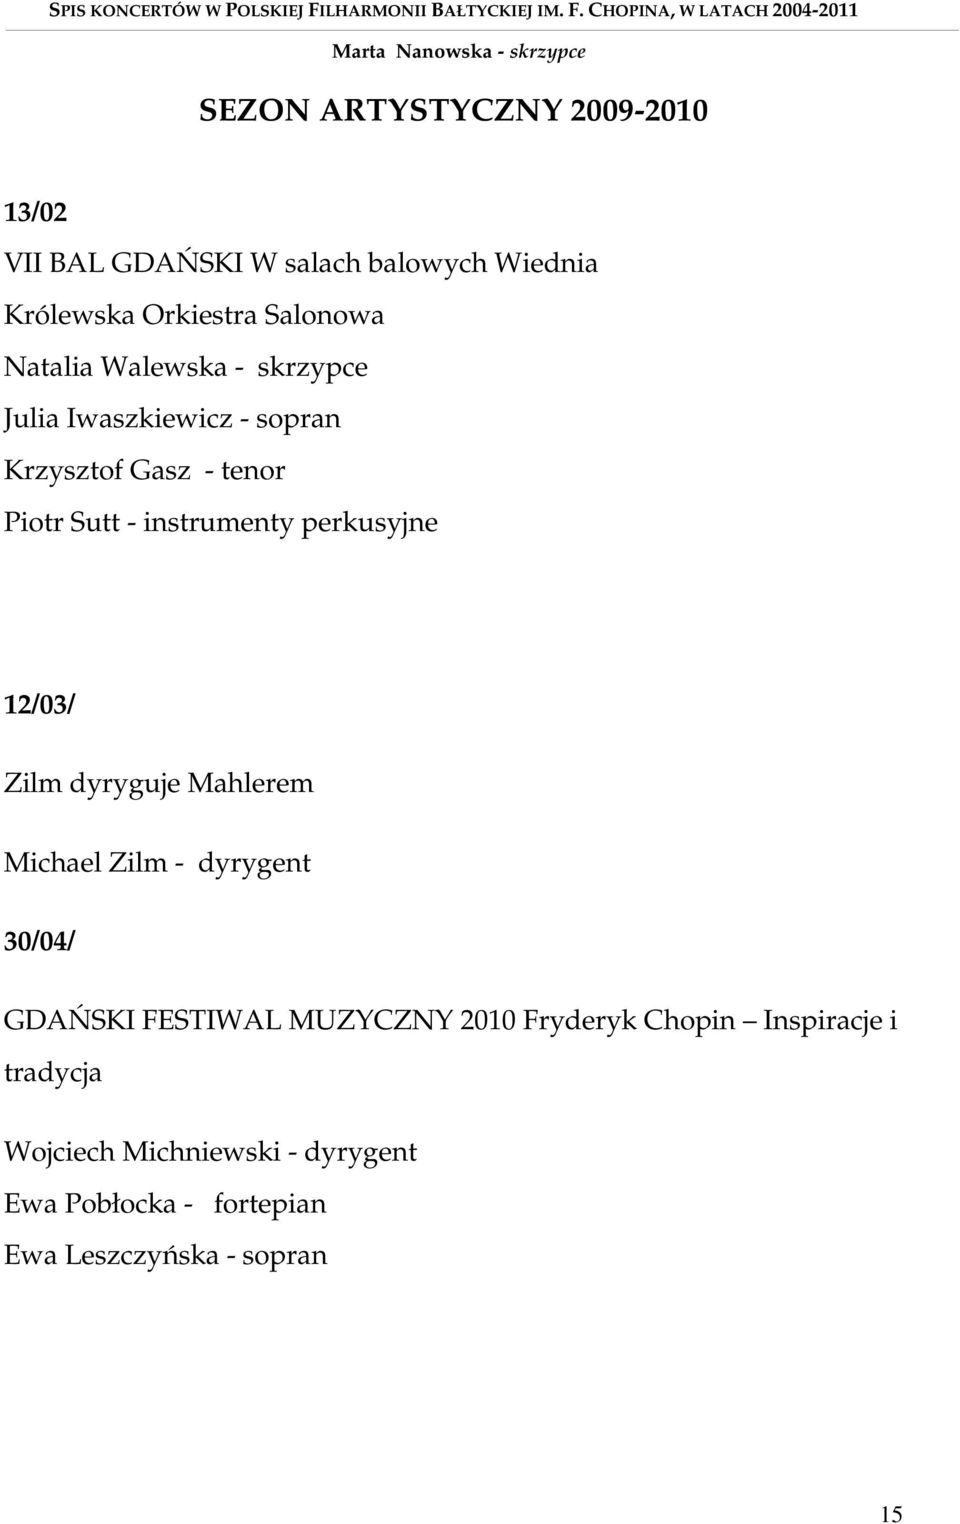 perkusyjne 12/03/ Zilm dyryguje Mahlerem Michael Zilm - dyrygent 30/04/ GDAŃSKI FESTIWAL MUZYCZNY 2010